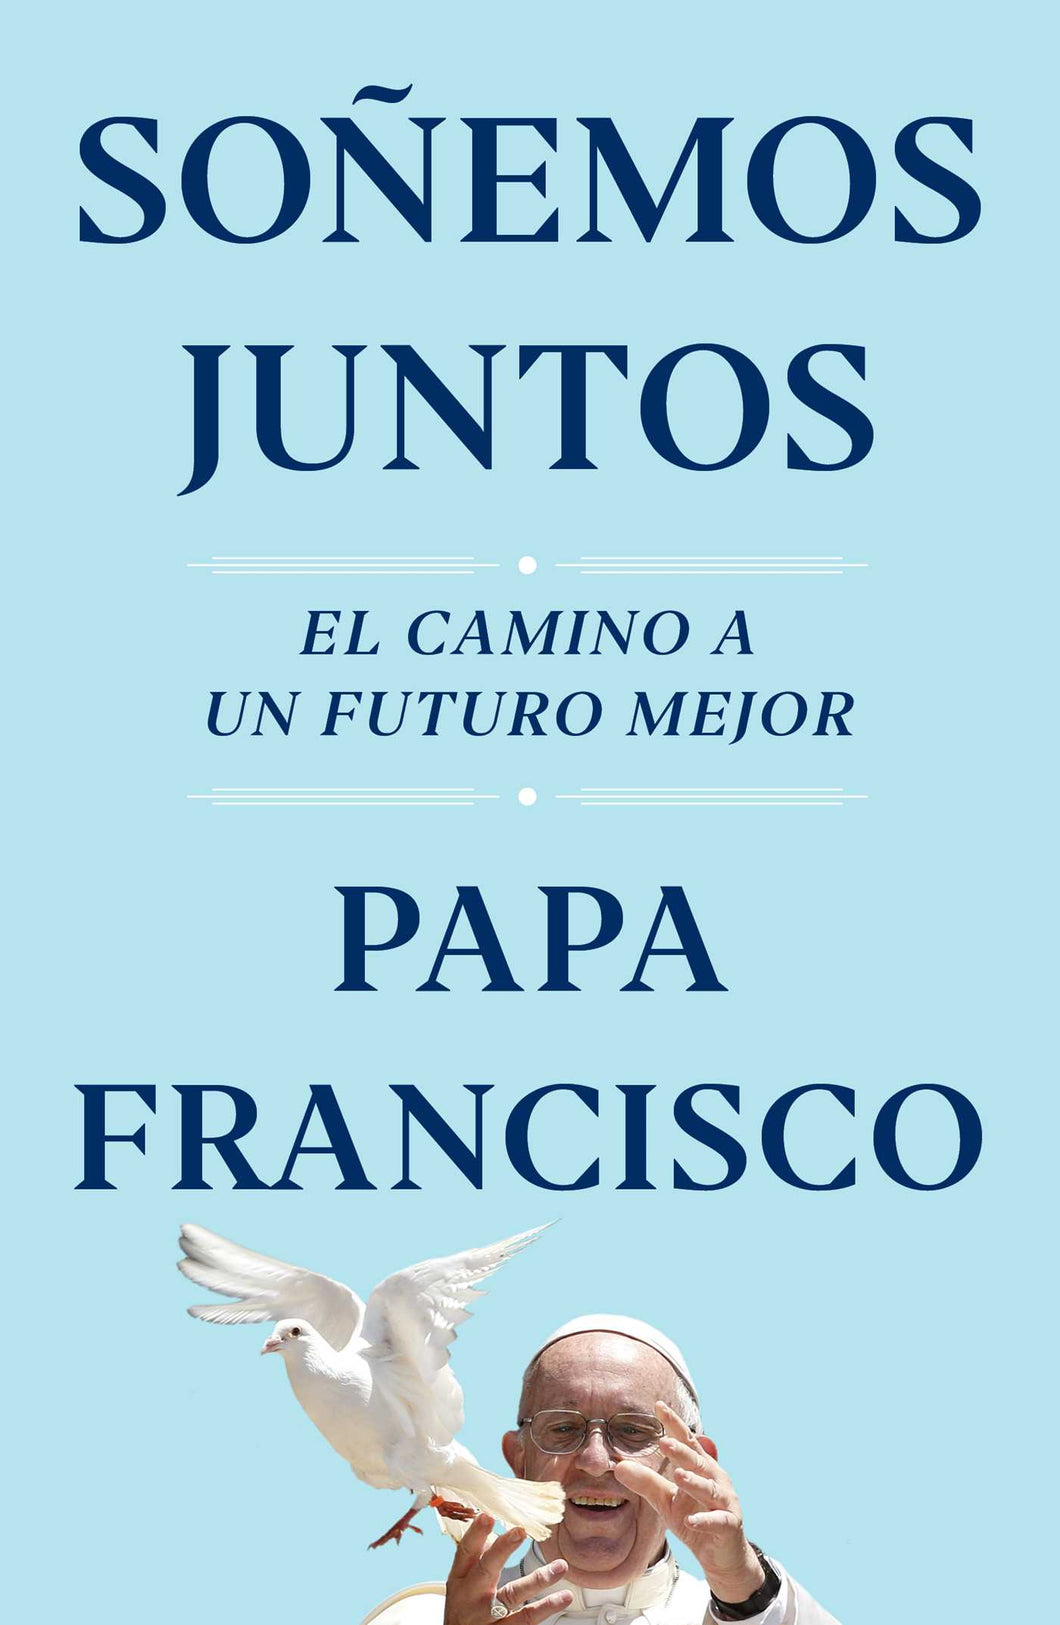 SOÑEMOS JUNTOS - Papa Francisco